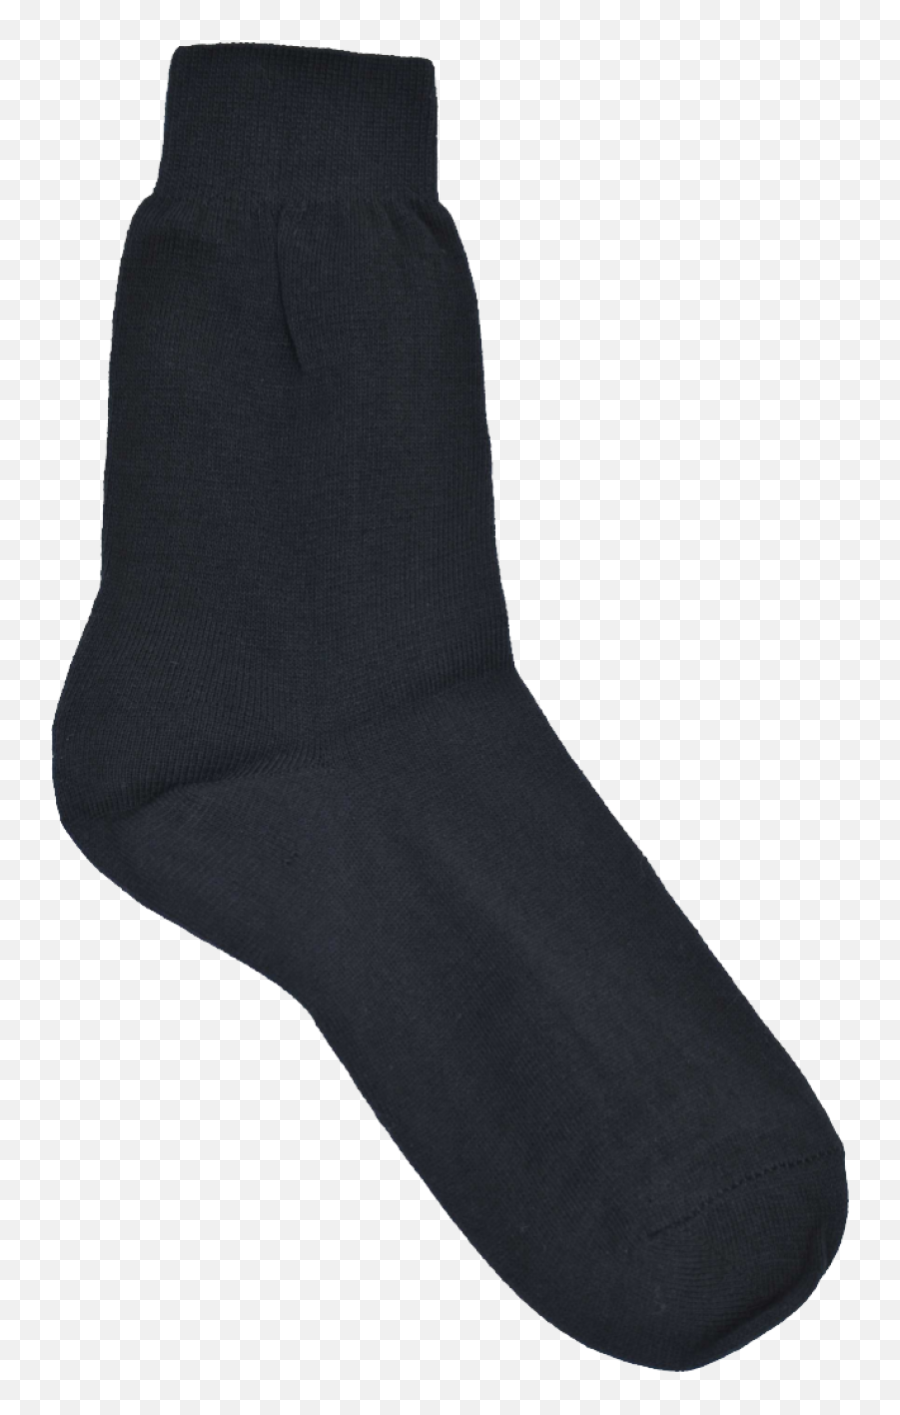 Black Socks Png Image - Black Socks Transparent Background,Socks Png